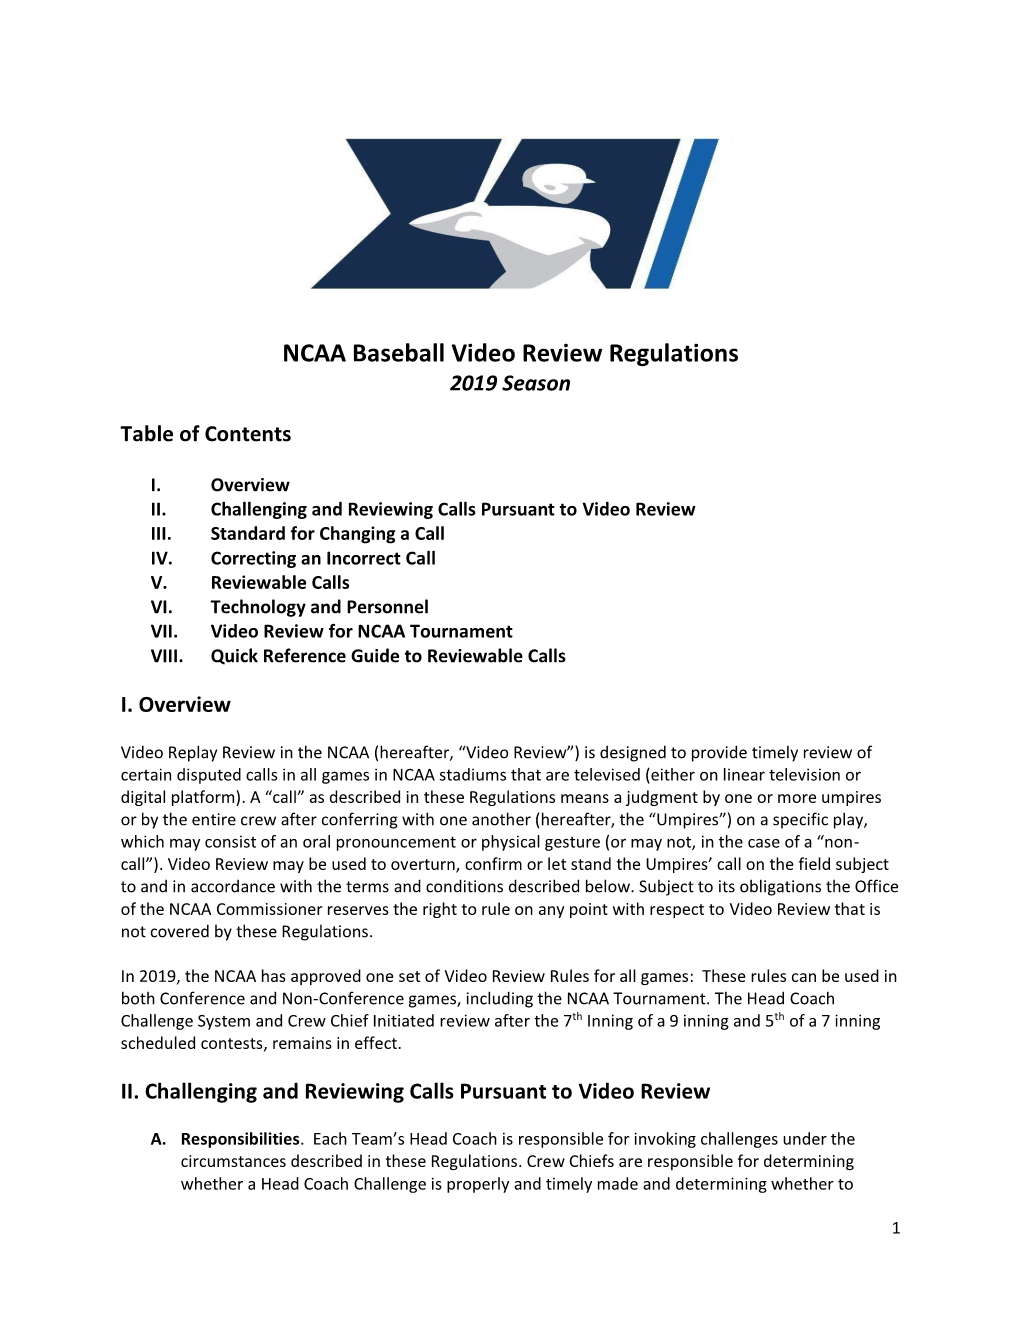 NCAA Baseball Video Review Regulations 2019 Season